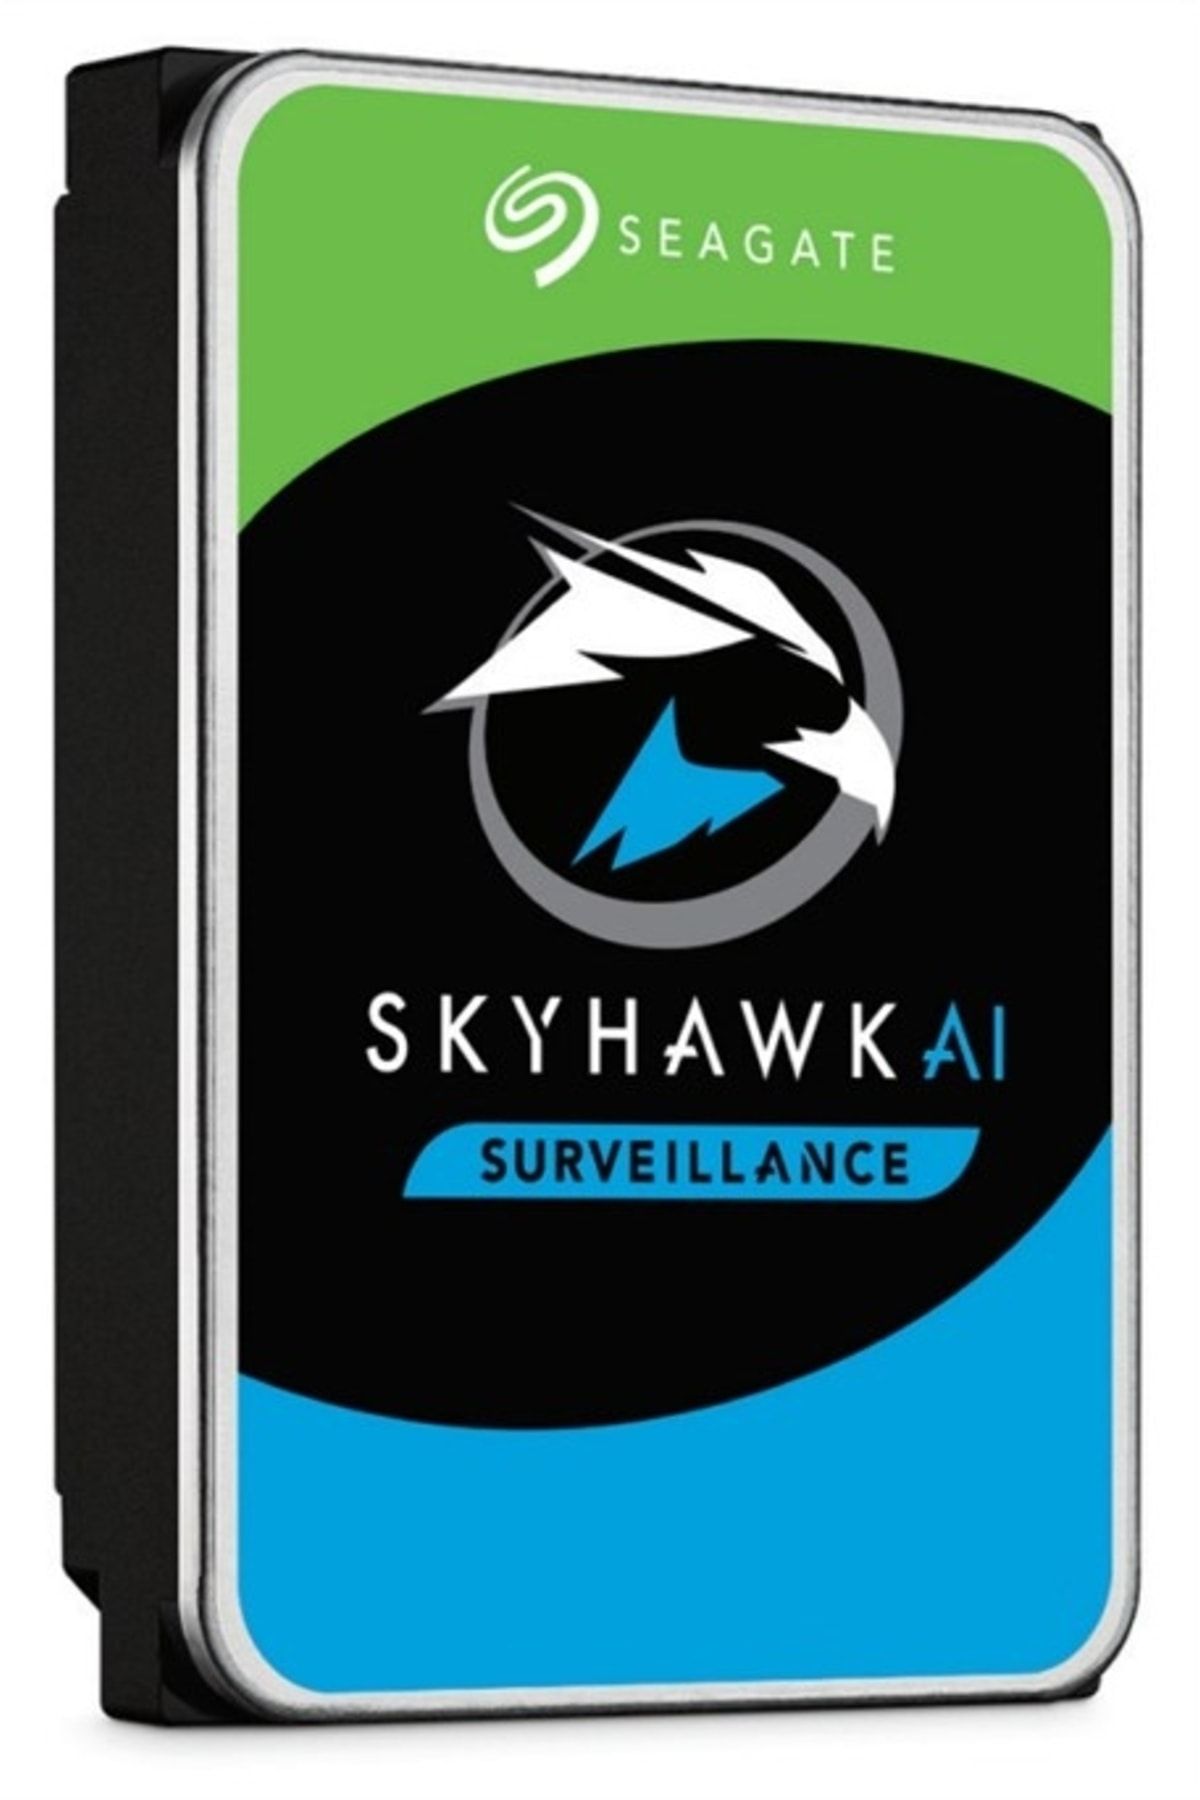 Seagate St12000ve001 12tb Skyhawk 3.5" 7200rpm 7-24 Harddisk (resmi Distribitör Ürünü)